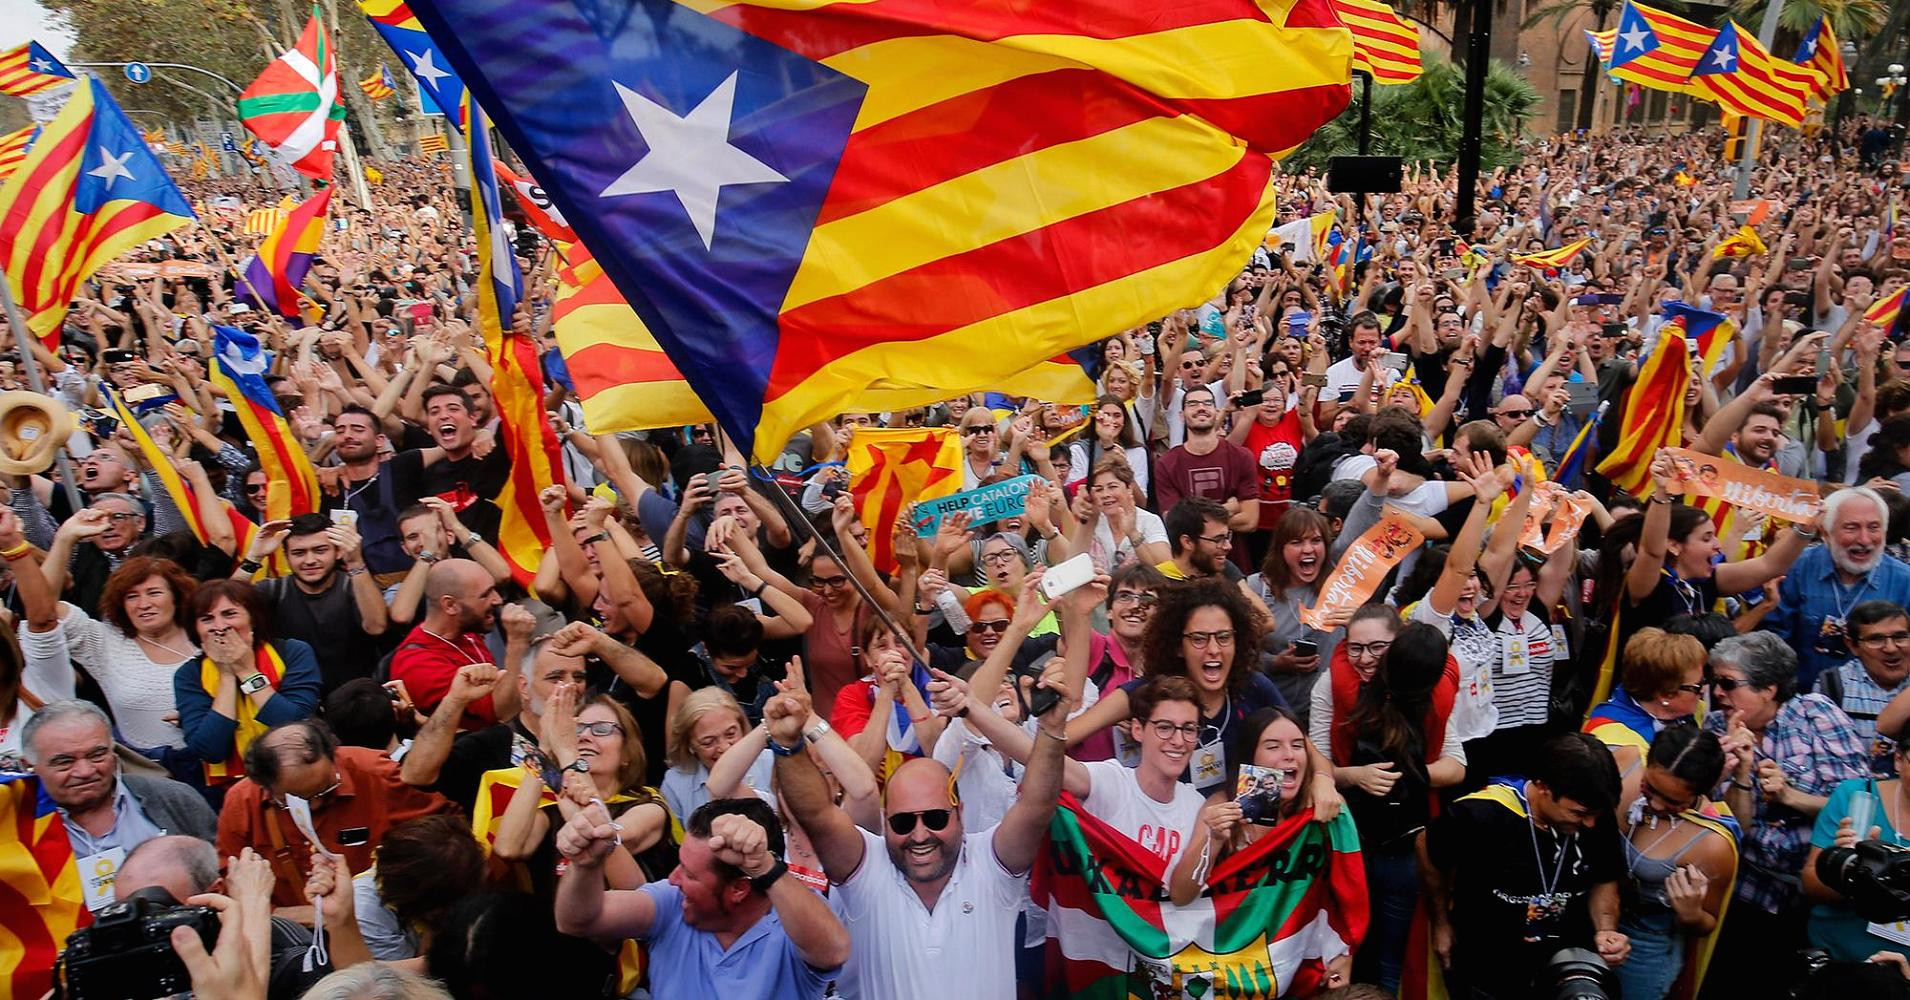 Οι επίγονοι του Φράνκο και  το καταλανικό εργαστήρι του ευρωπαϊκού αυταρχισμού